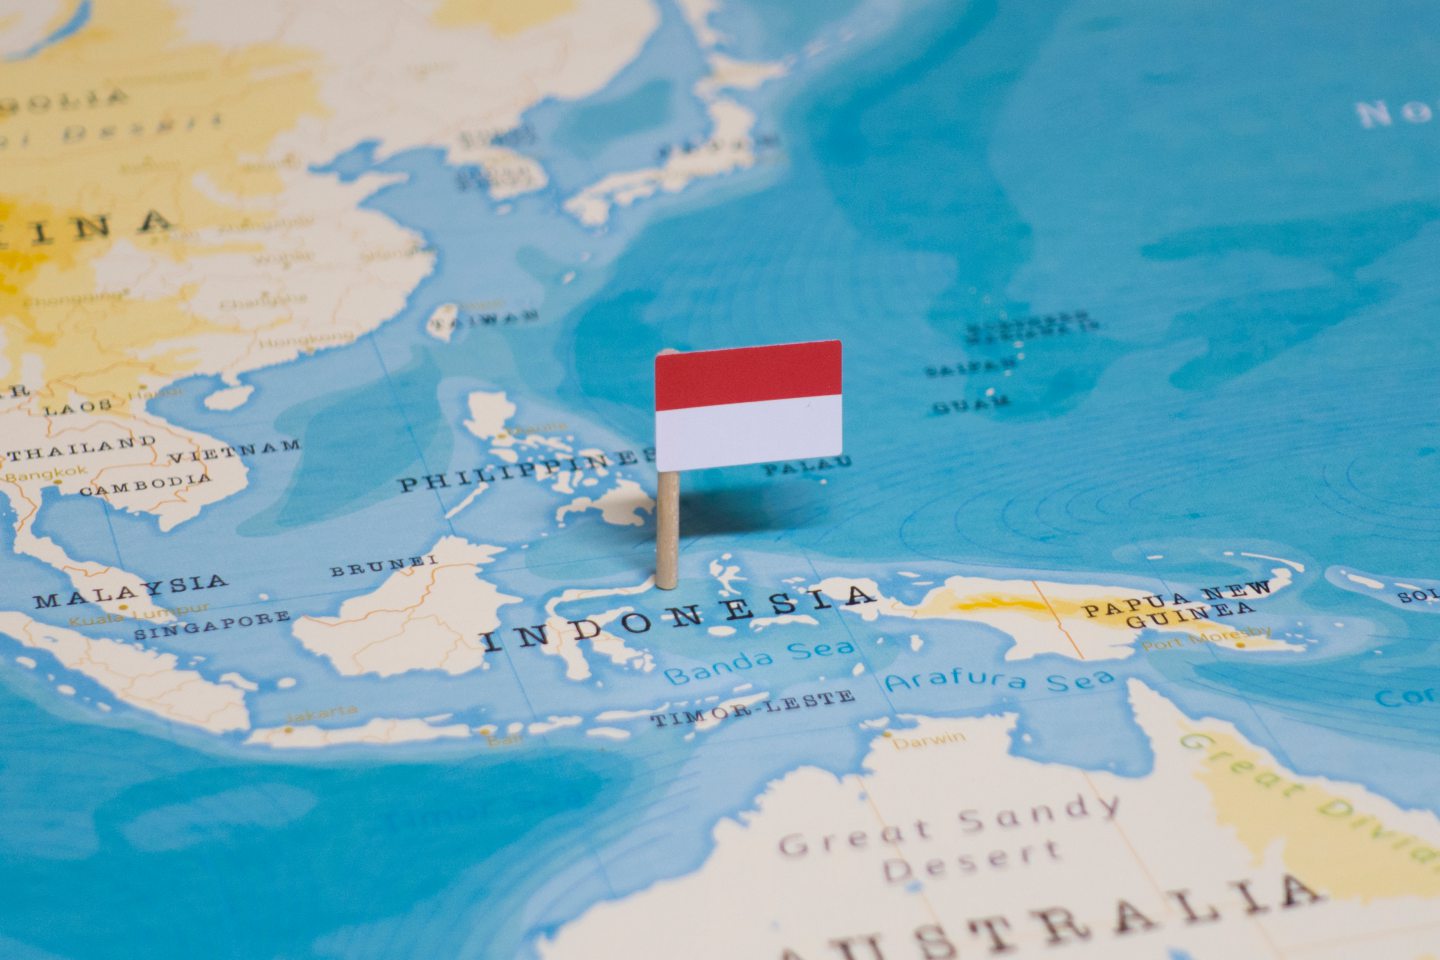 Indonesia kembali menawar blok East Natuna